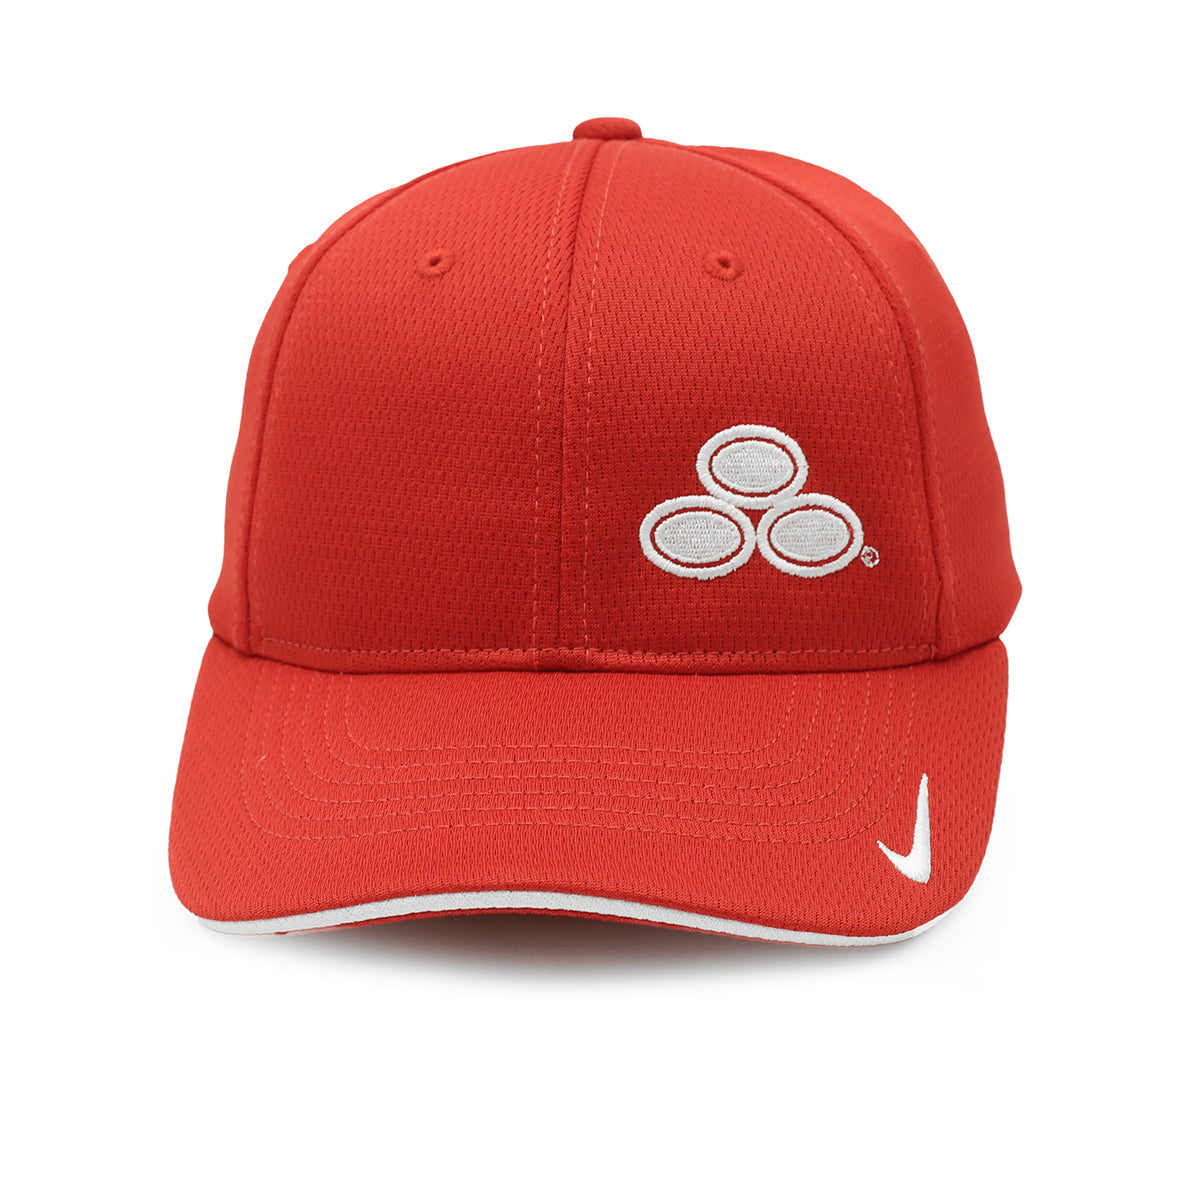 Nike Dri-FIT Mesh Flex Fitted Hat